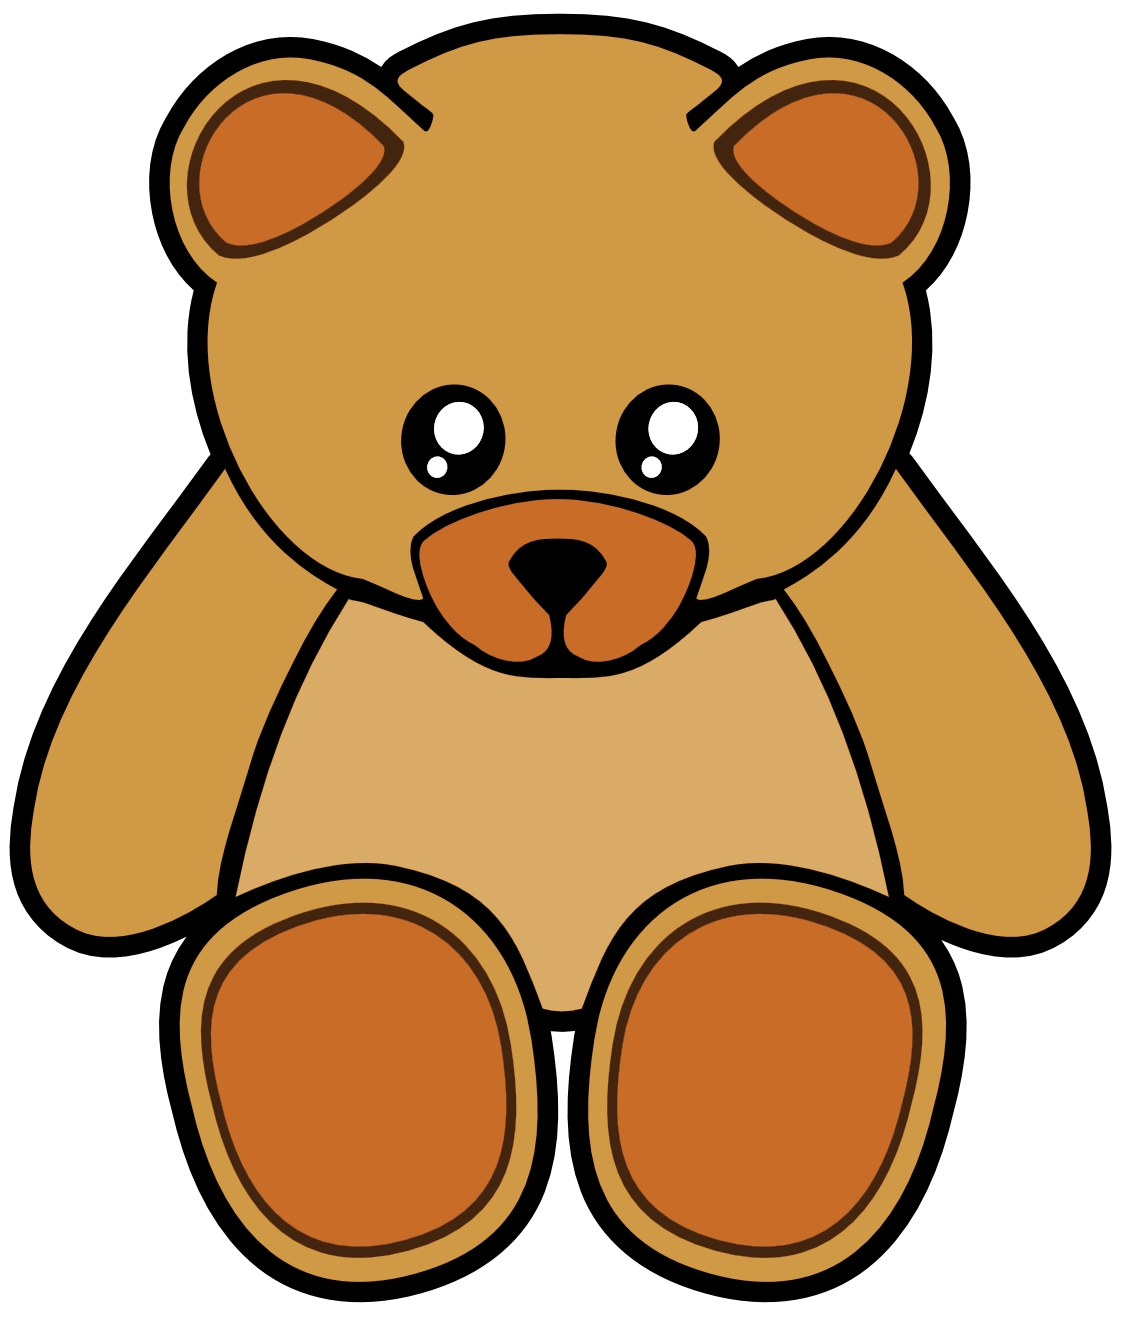 Cute bear teddy bear clip art on teddy bears clip art and bears ...